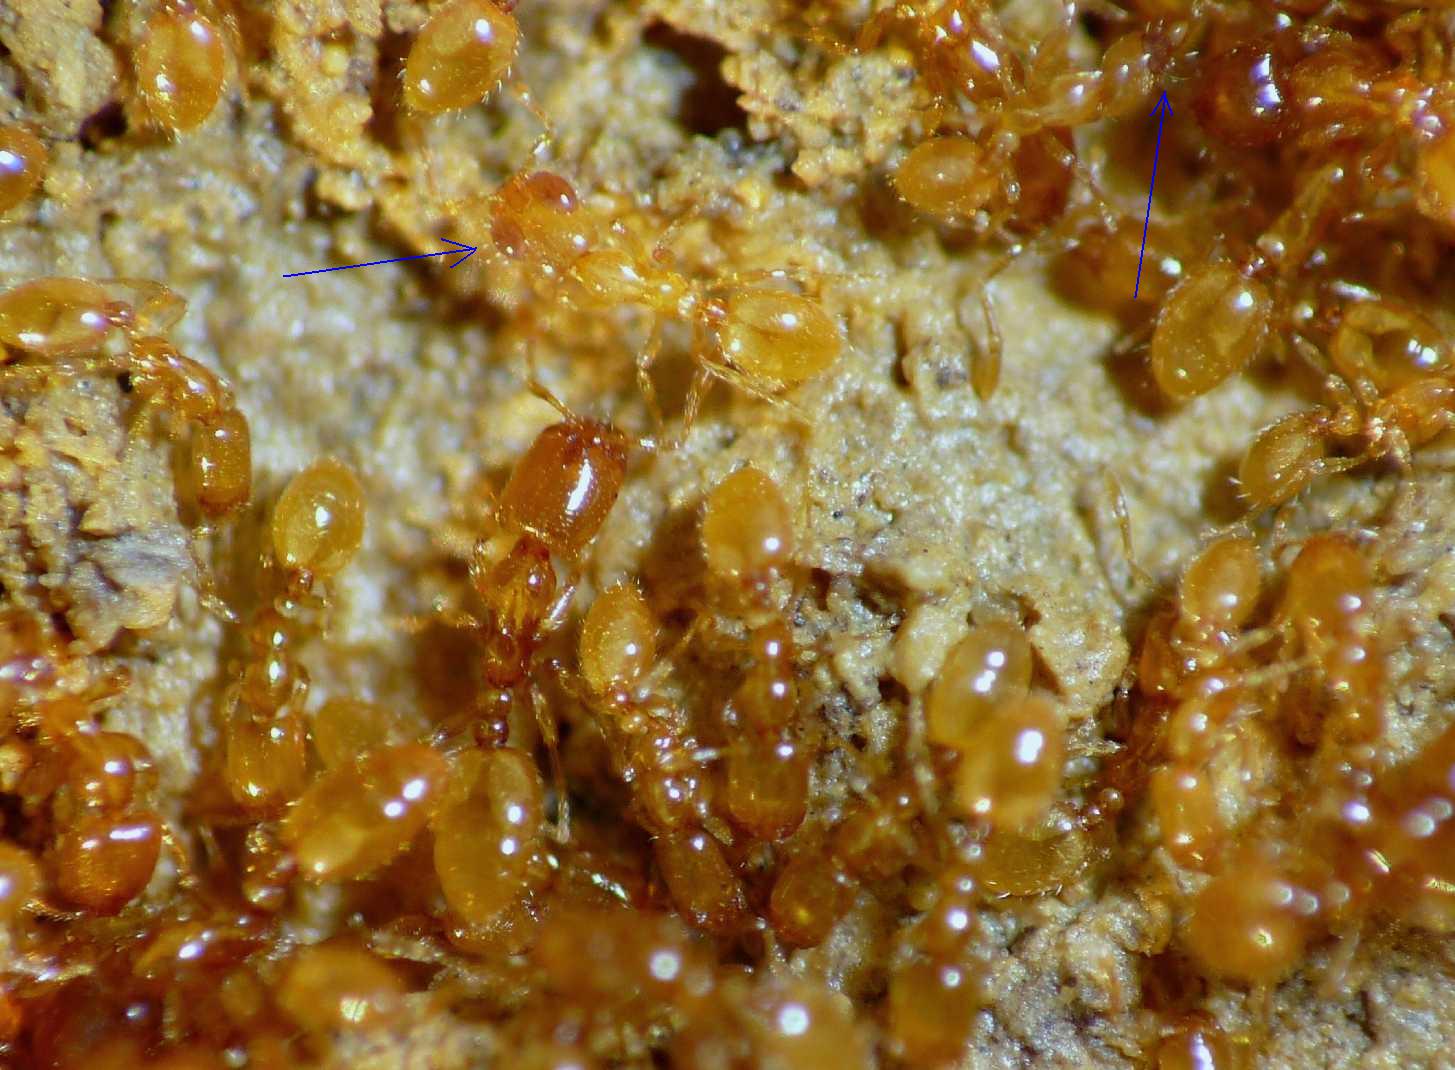 Acari (Mesostigmata) ospiti delle formiche Solenopsis